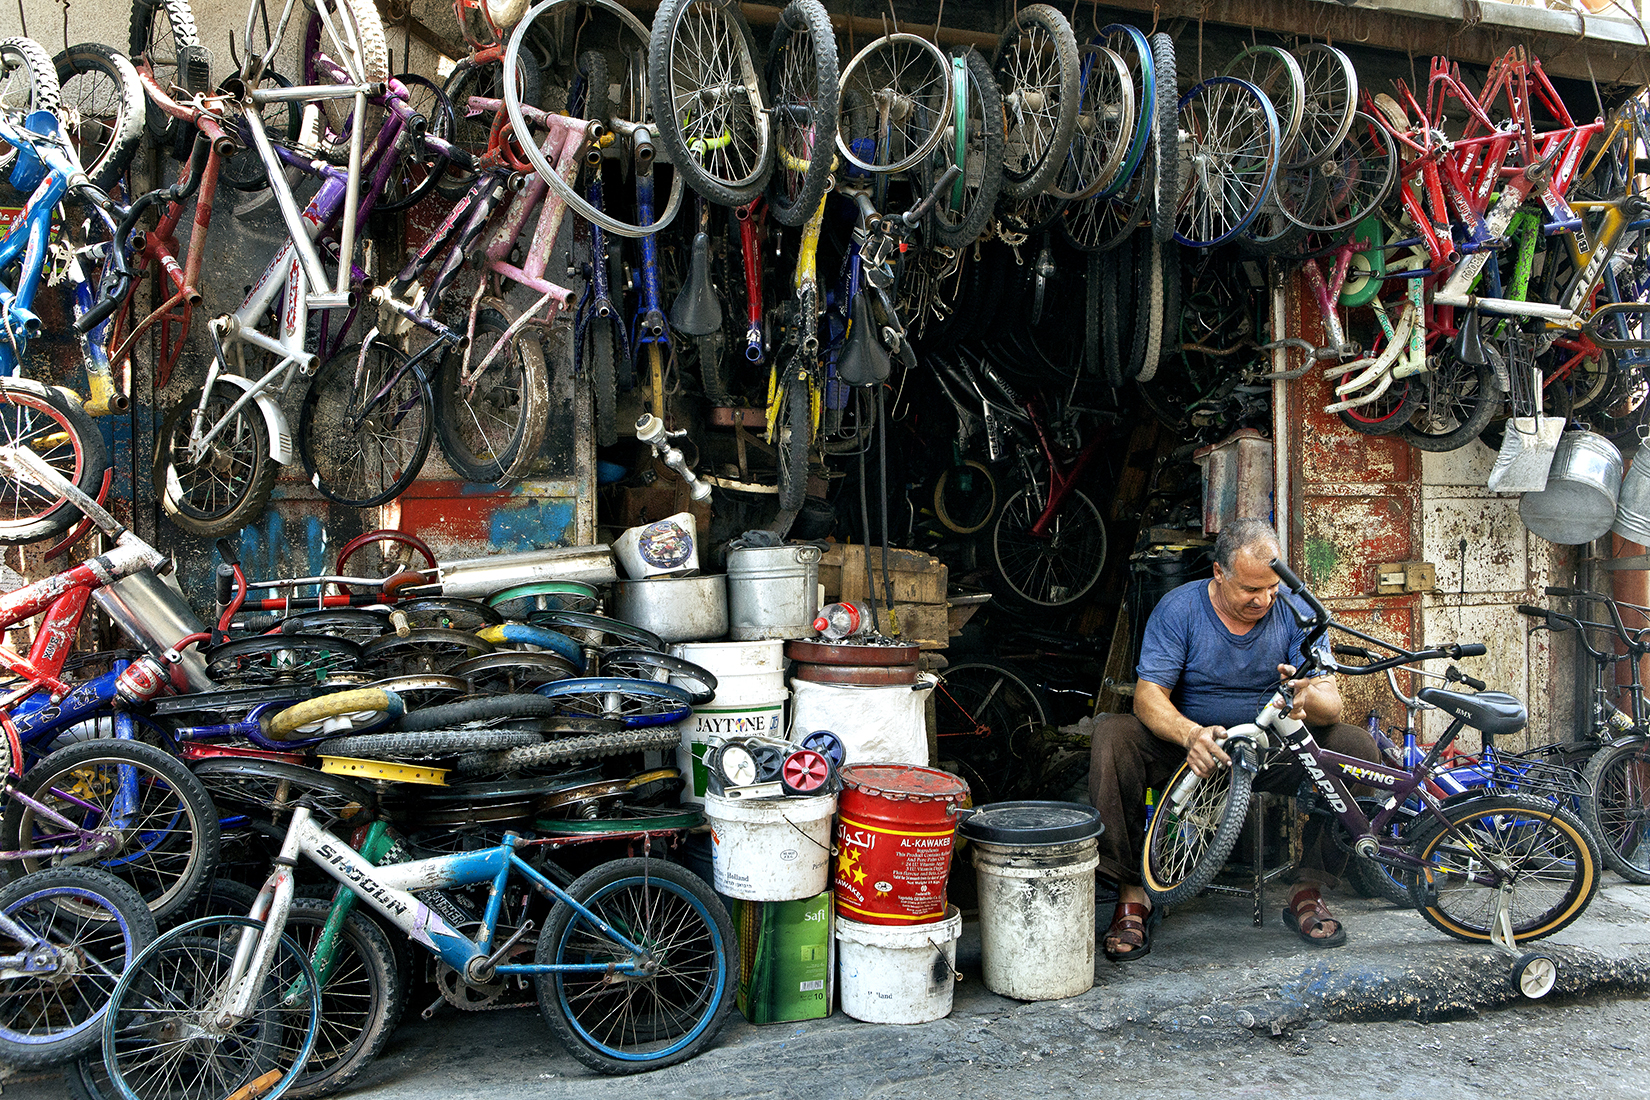 16. Bicycle Repairs